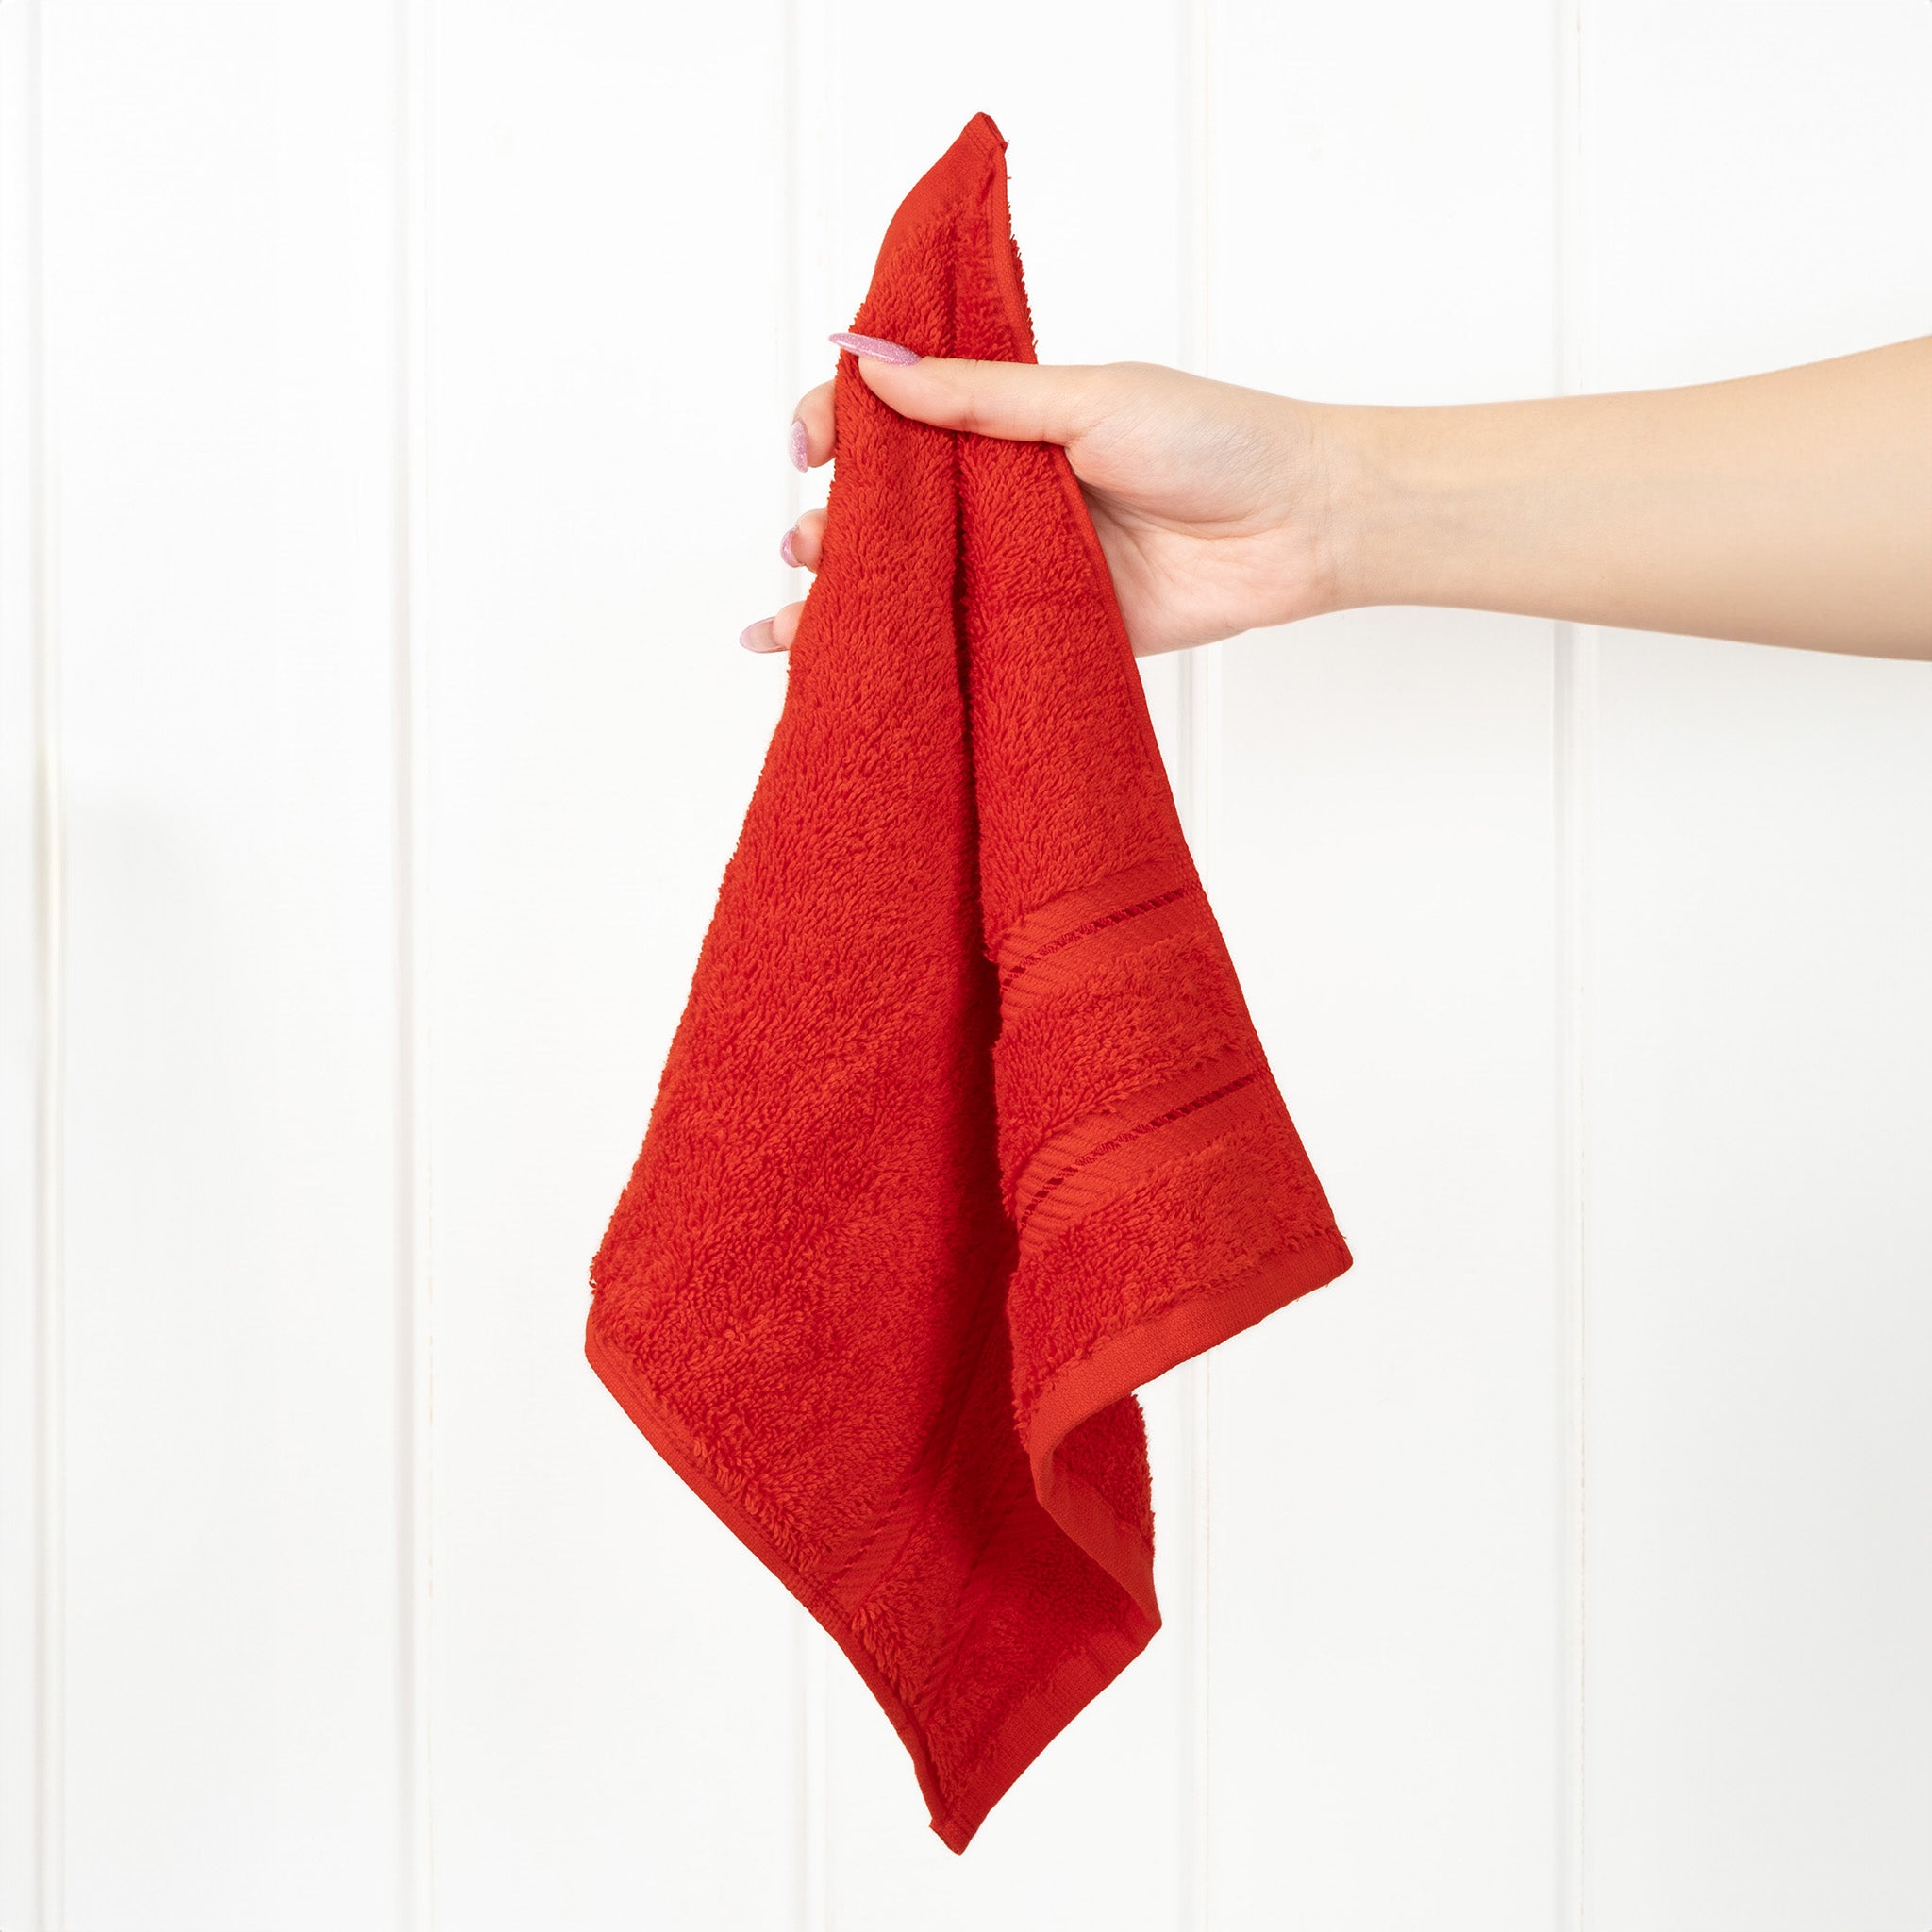 American Soft Linen 100% Turkish Cotton 4 Piece Washcloth Set red-2